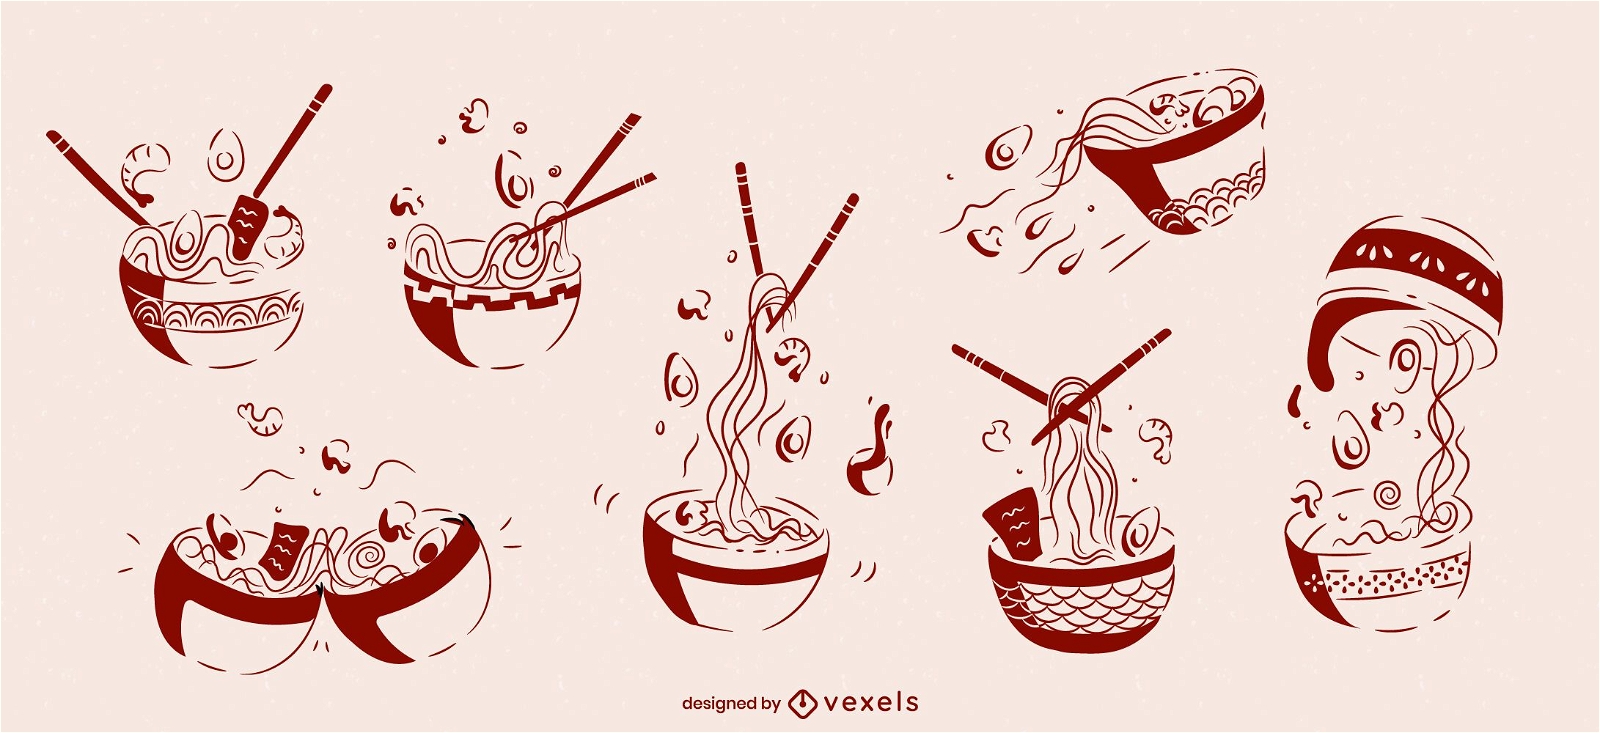 Juego de bocetos de comida japonesa de tazón de ramen